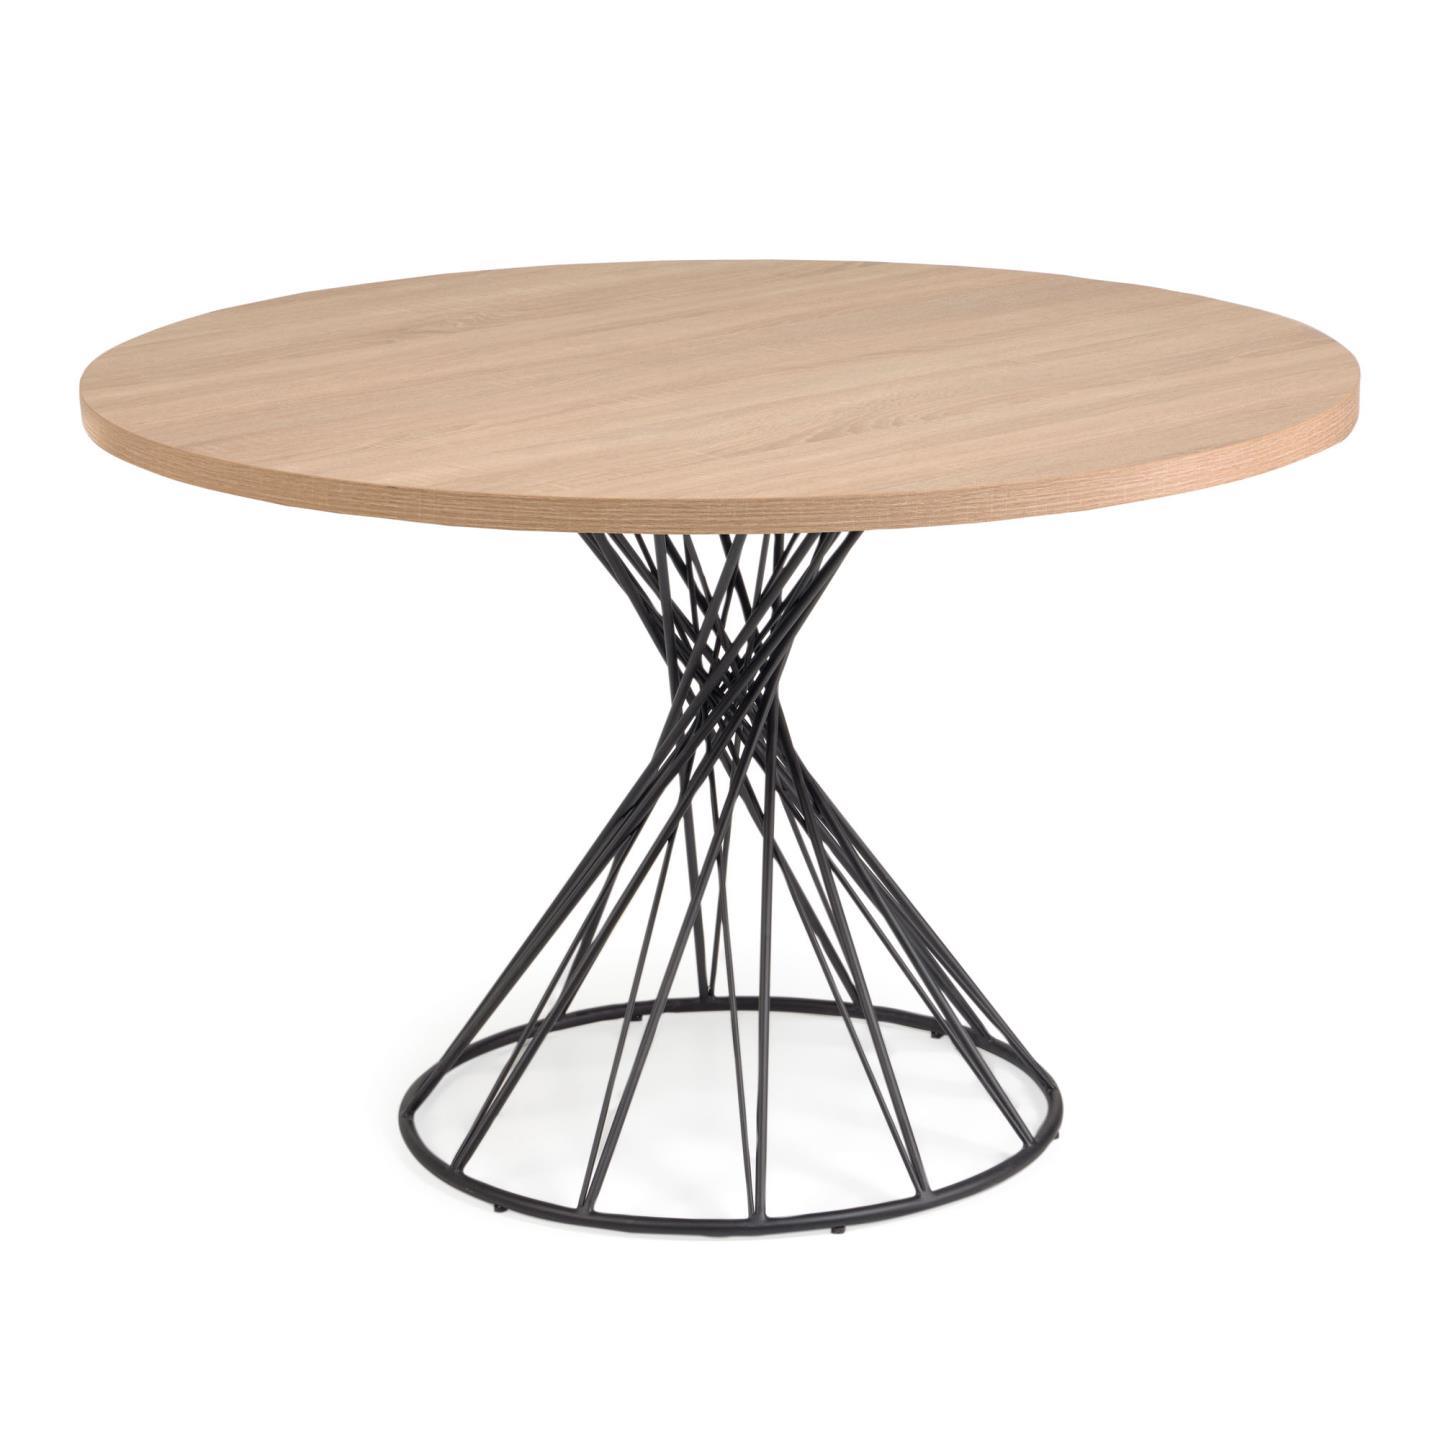 Billede af LAFORMA Niut spisebord, rundt (Ø: 120cm), træ (MDF) i naturfinnish med stålben